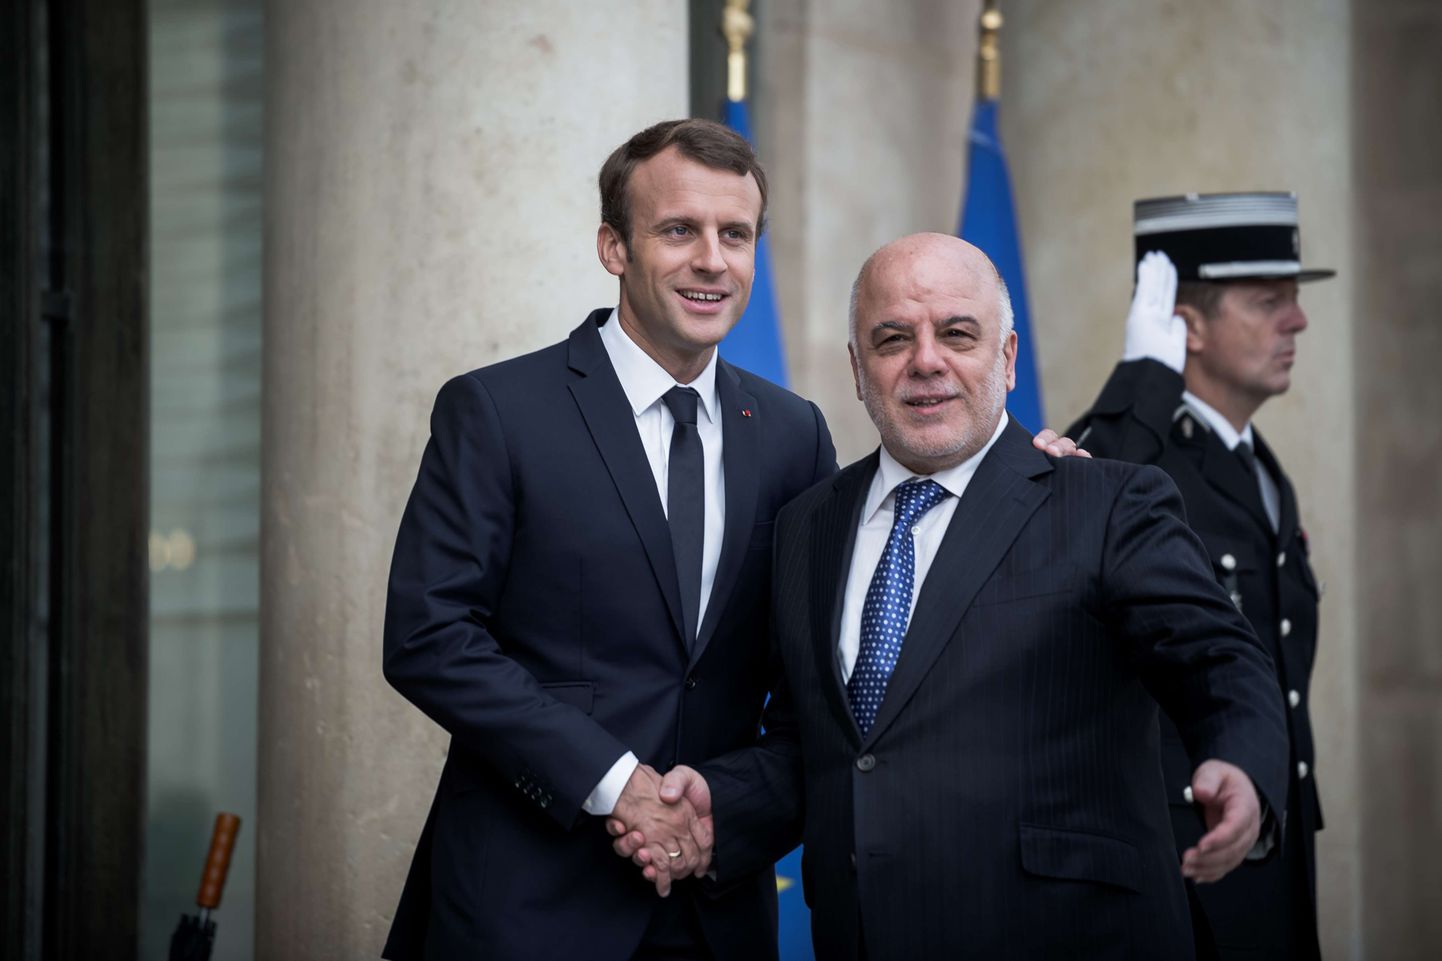 Prantsuse president Emmanuel Macron ja Iraagi riigipea Haider al-Abadi Pariisis.